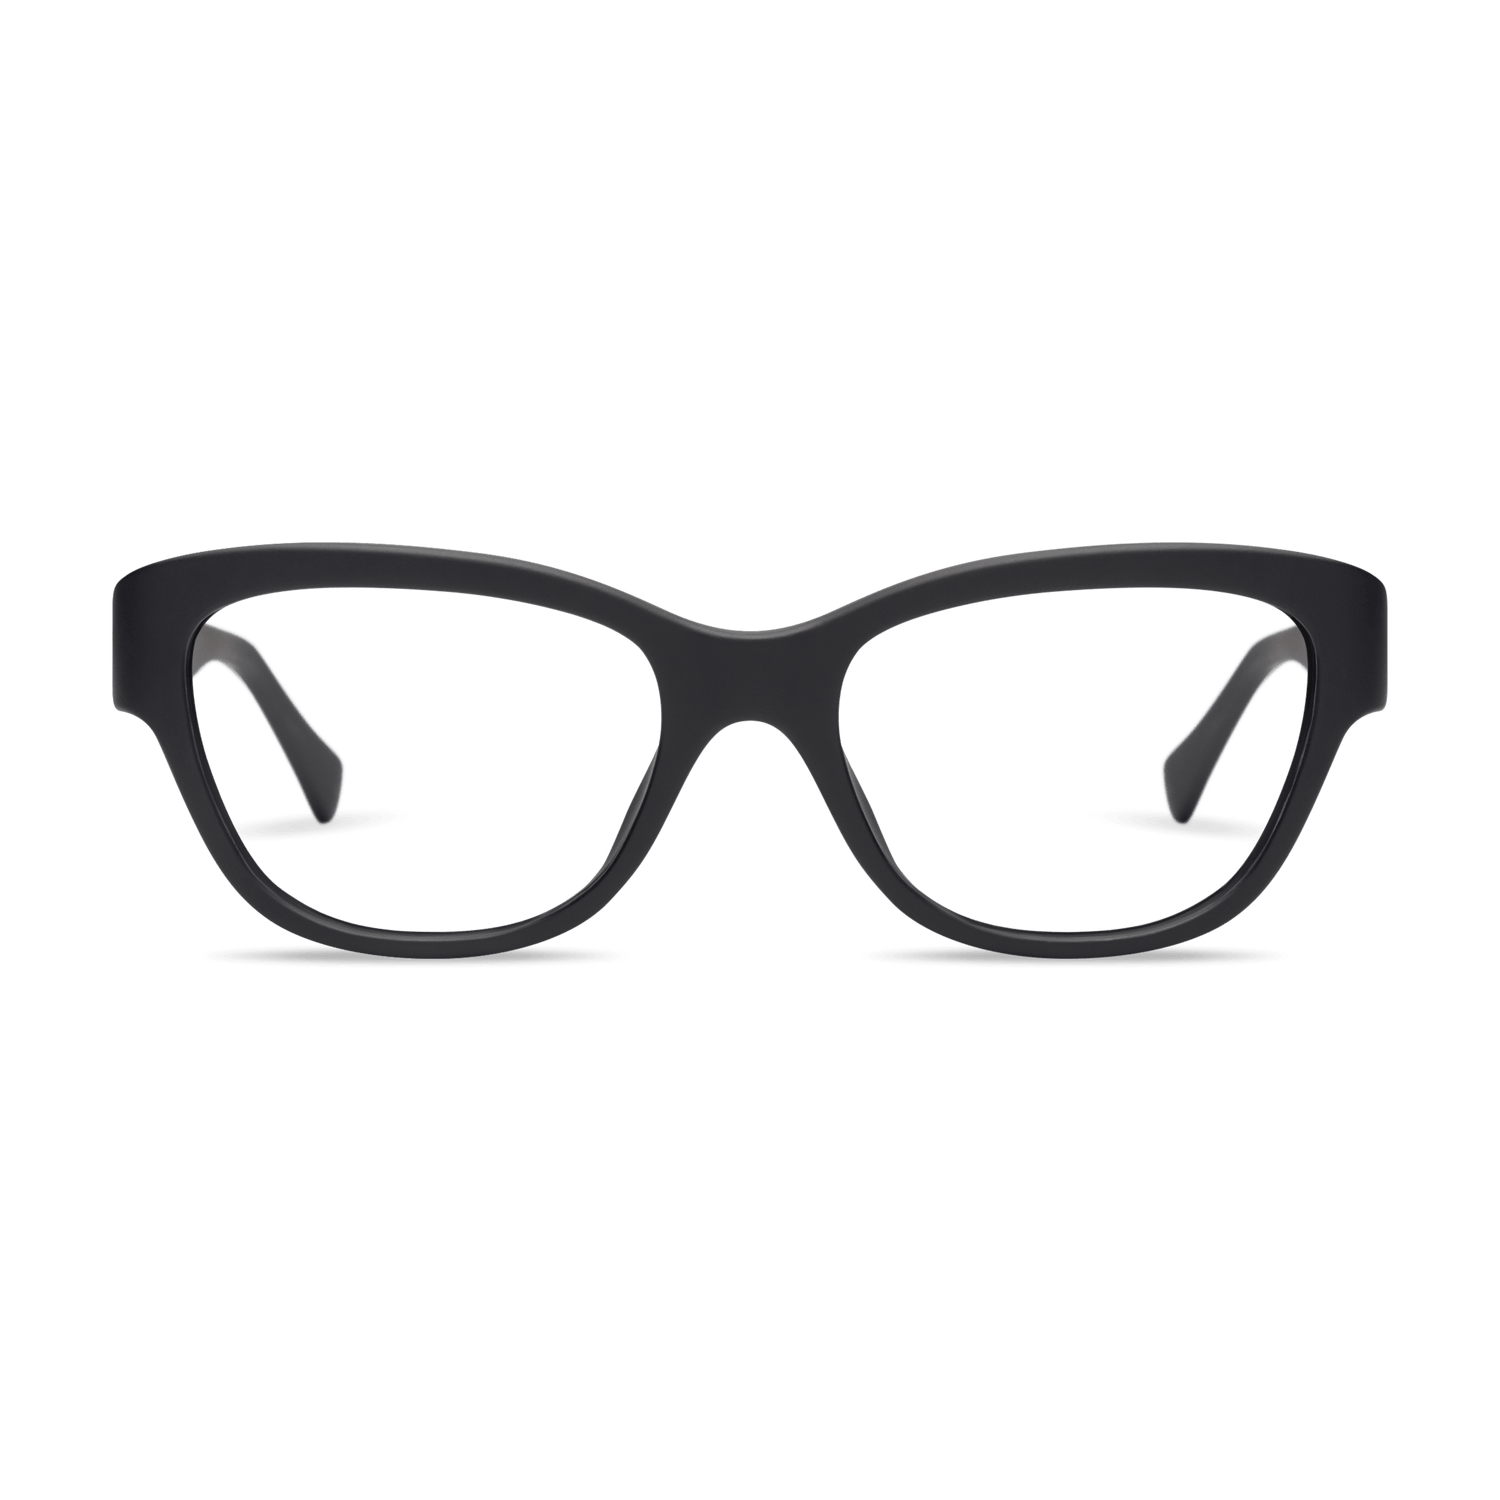 Milla Blue Light Eyeglasses LOOK OPTIC Black +0.00 